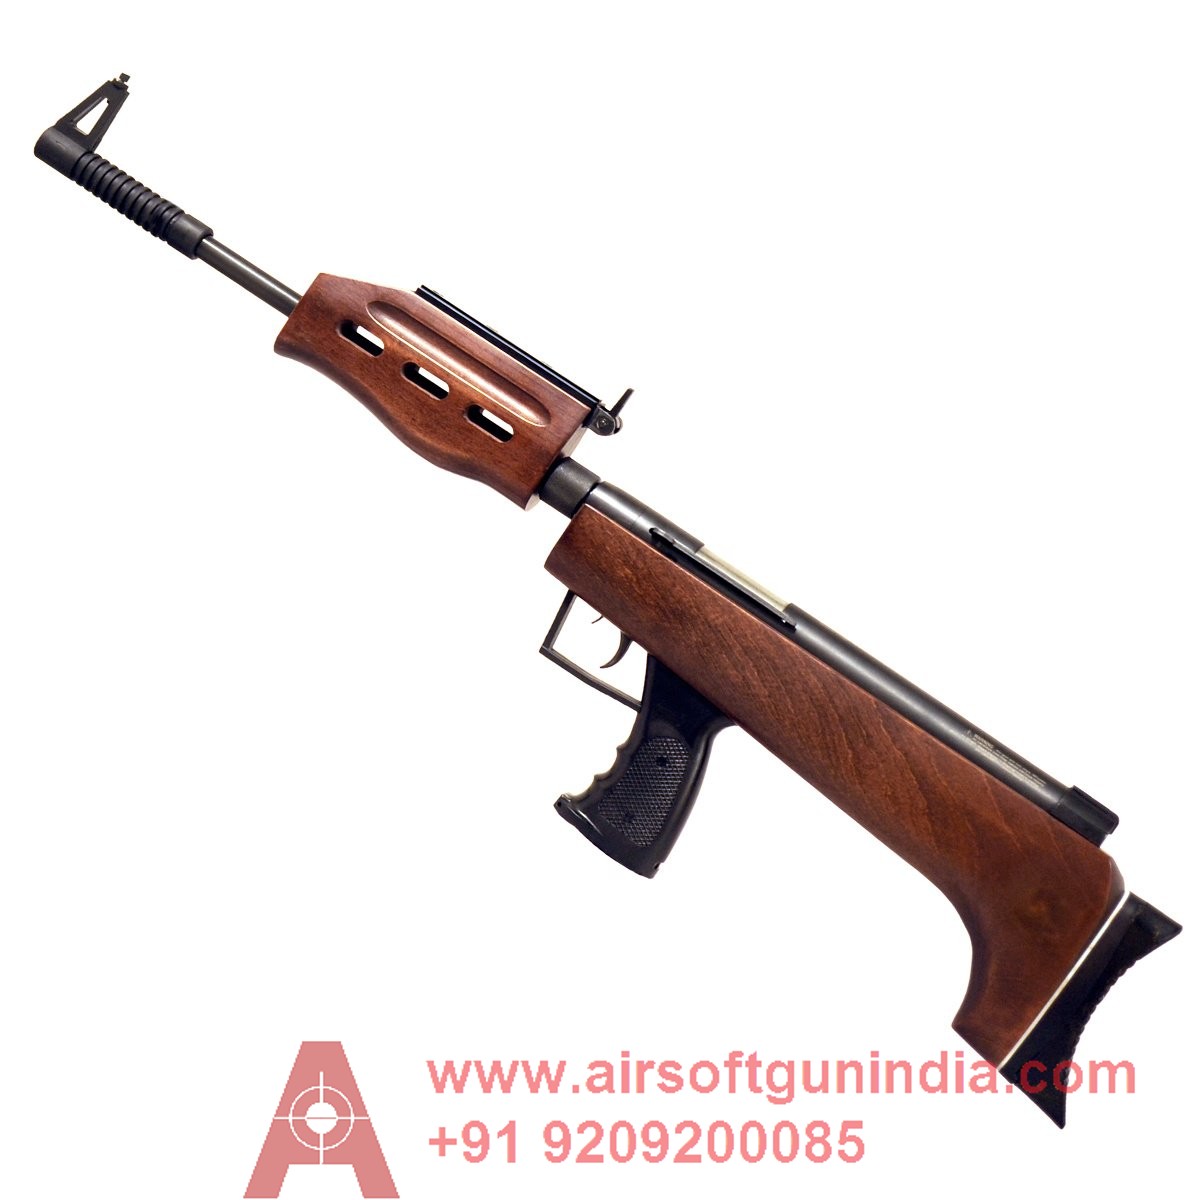 Industry Brand QB57 Air Rifle By Airsoft Gun India